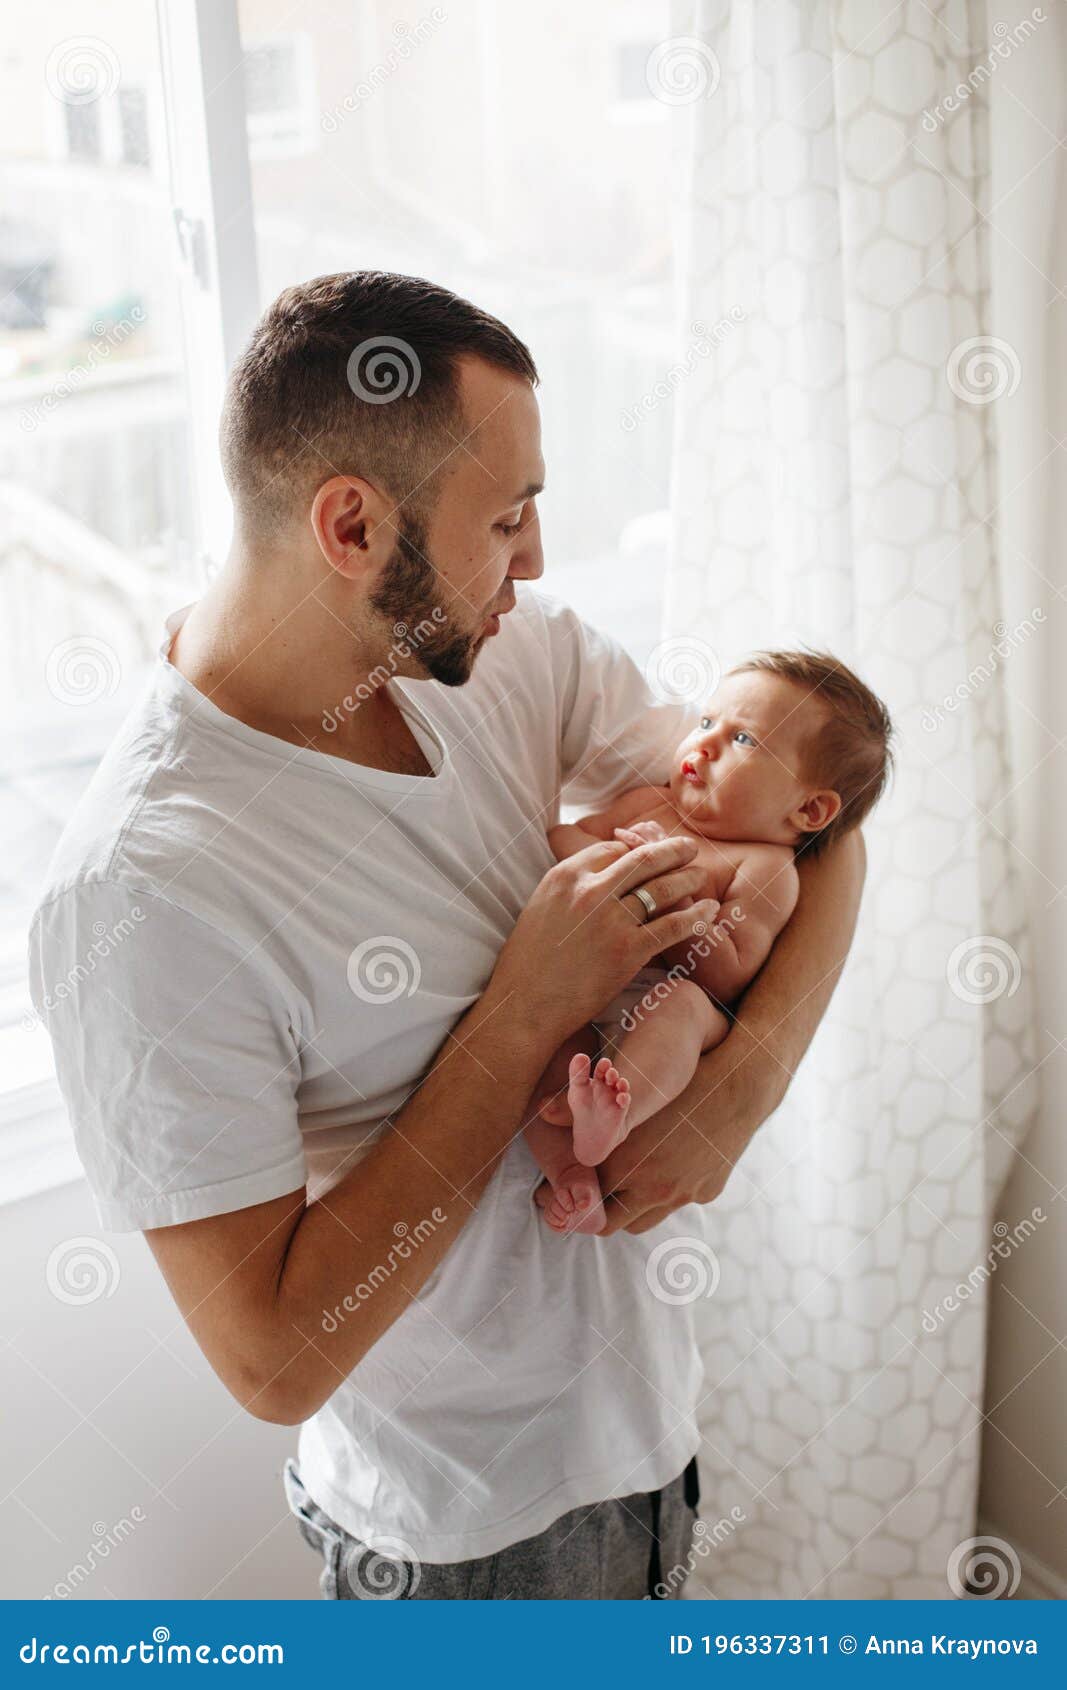 아기와 상호 작용하는 젊은 부모 사진 무료 다운로드 - Lovepik